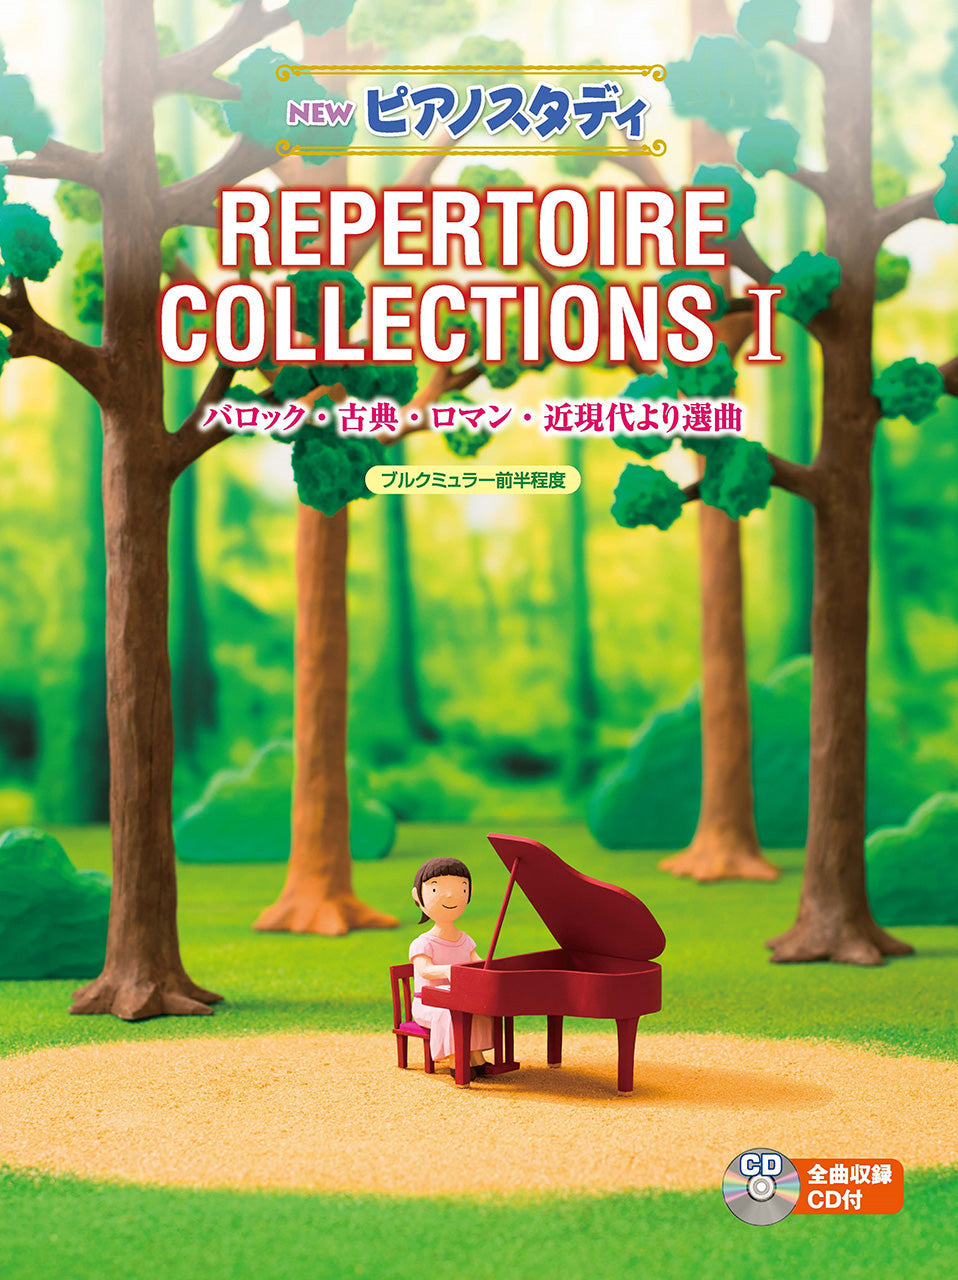 NEW ピアノスタディ レパートリーコレクションズI(CD付) | ヤマハの 